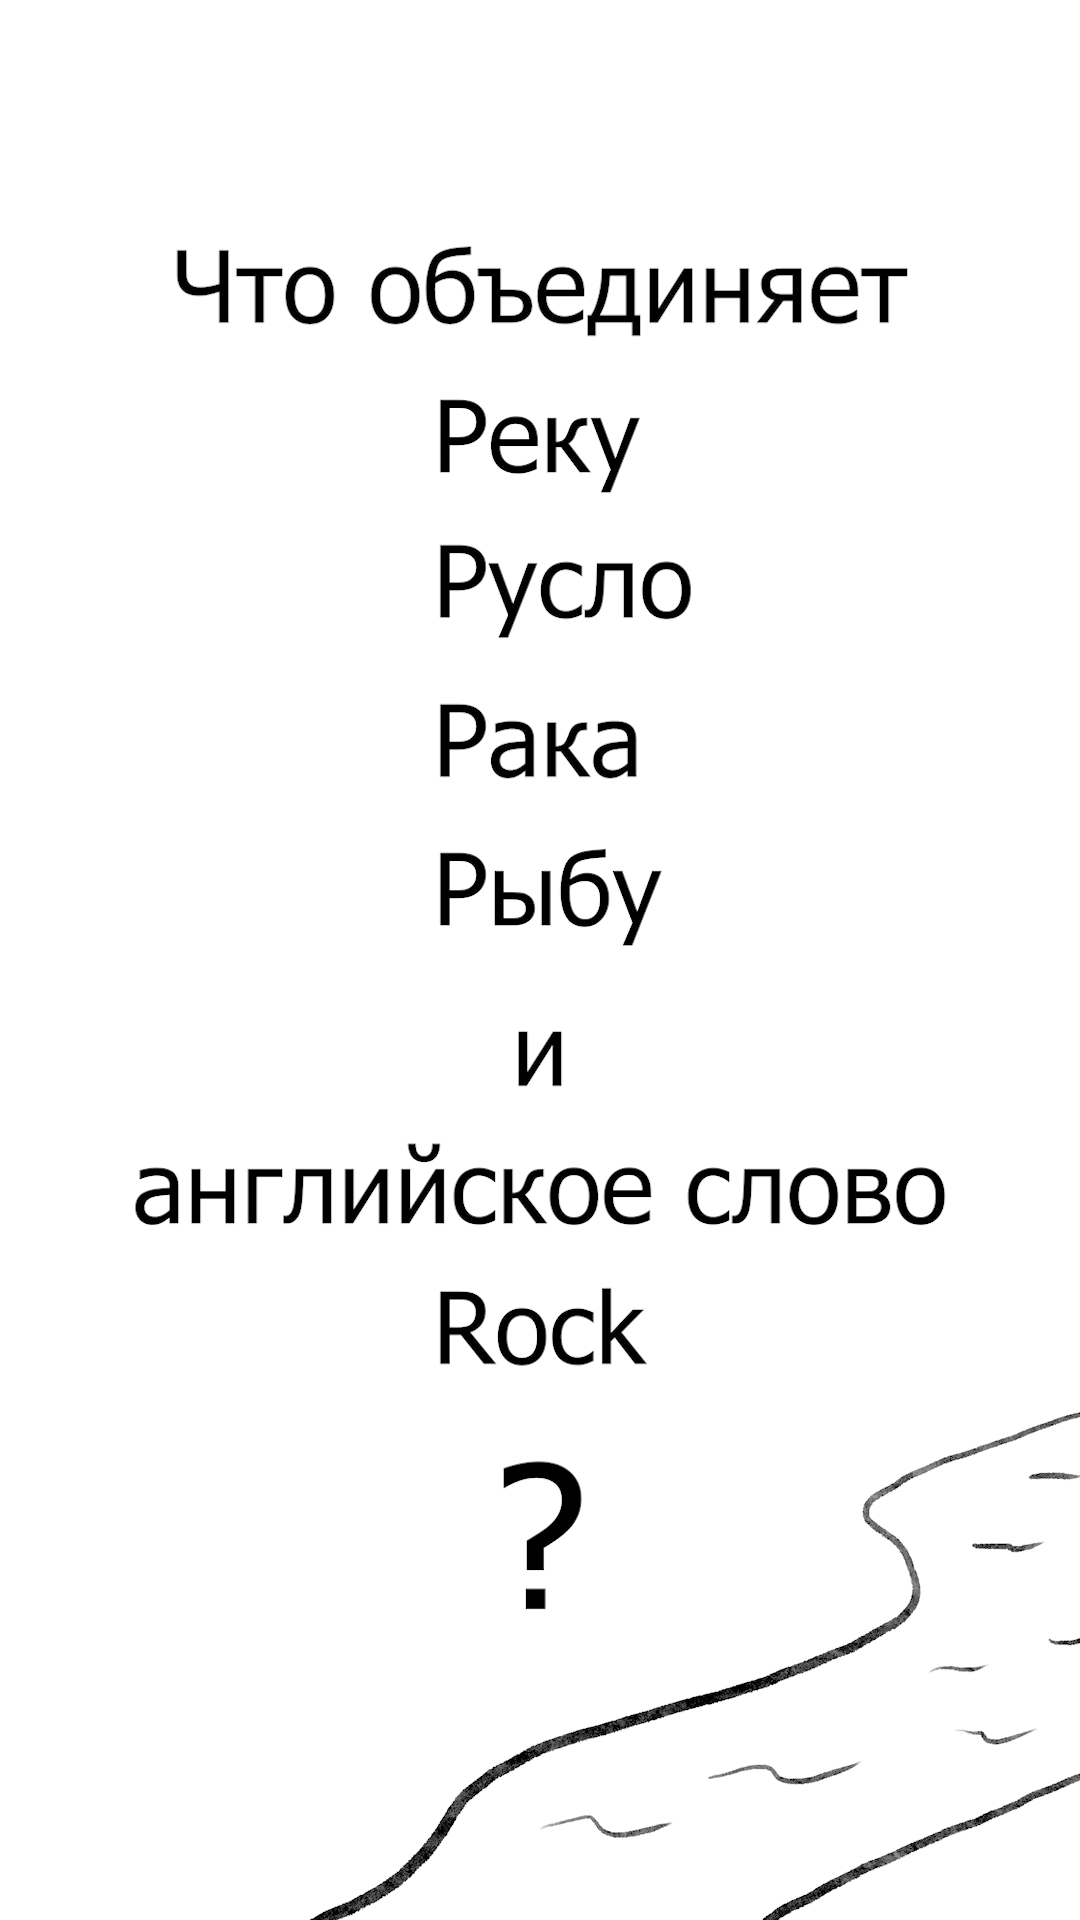 Река, Русло, Рак, Рыба, Rock. Русский язык это Интересно! Часть 6. #РусскийЯзык #Интересно #Рунарь